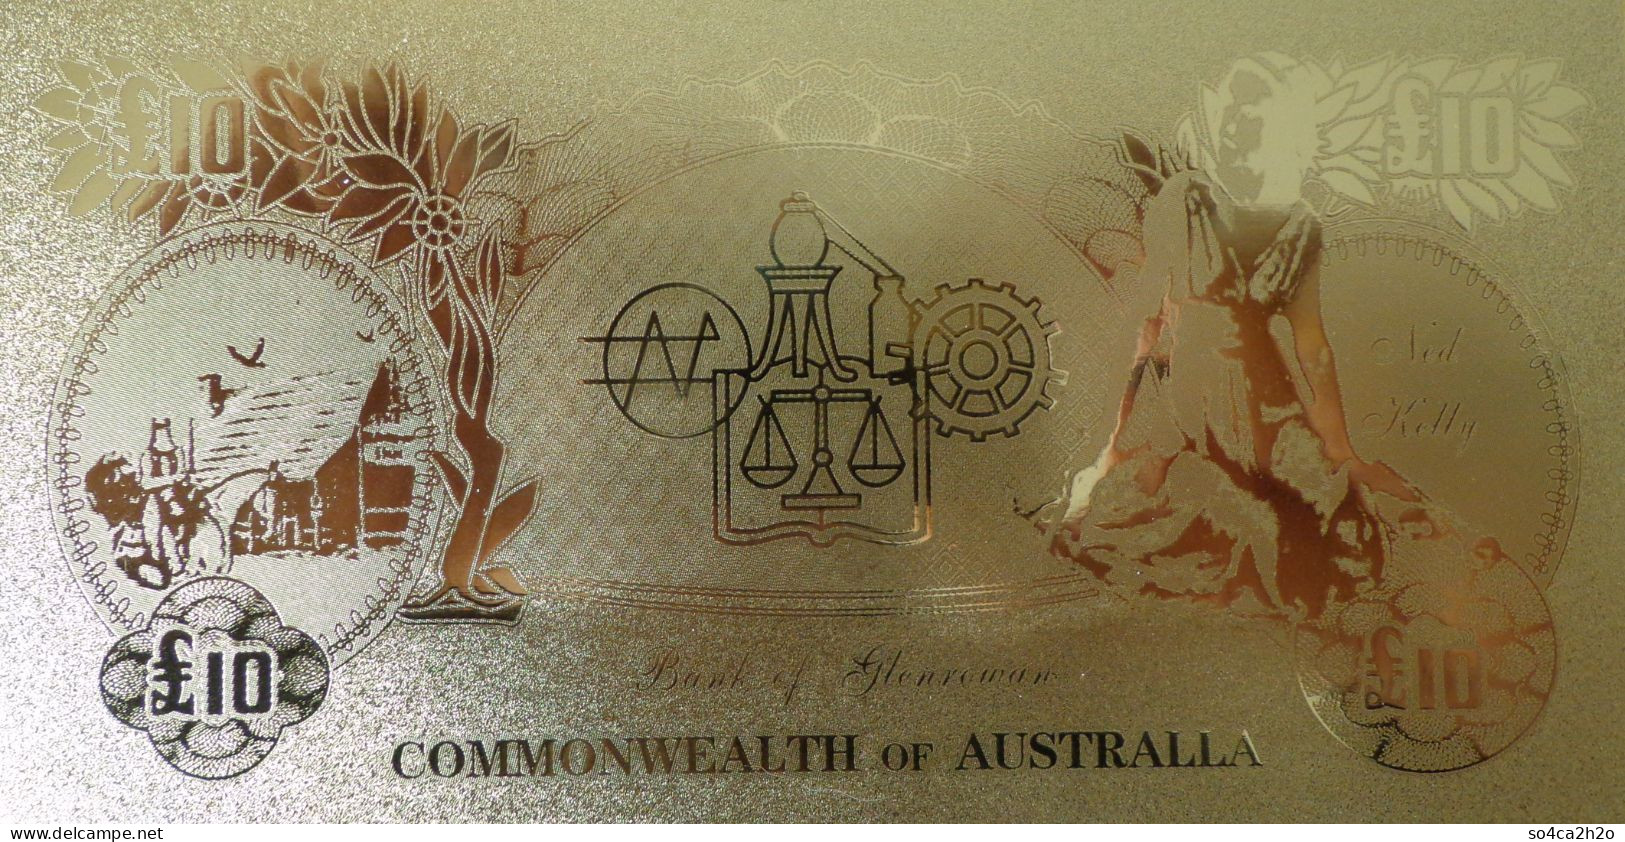 Billet Plaqué Or 24K Commonwealth Australien Banknote 10 Pounds  UNC - Fakes & Specimens